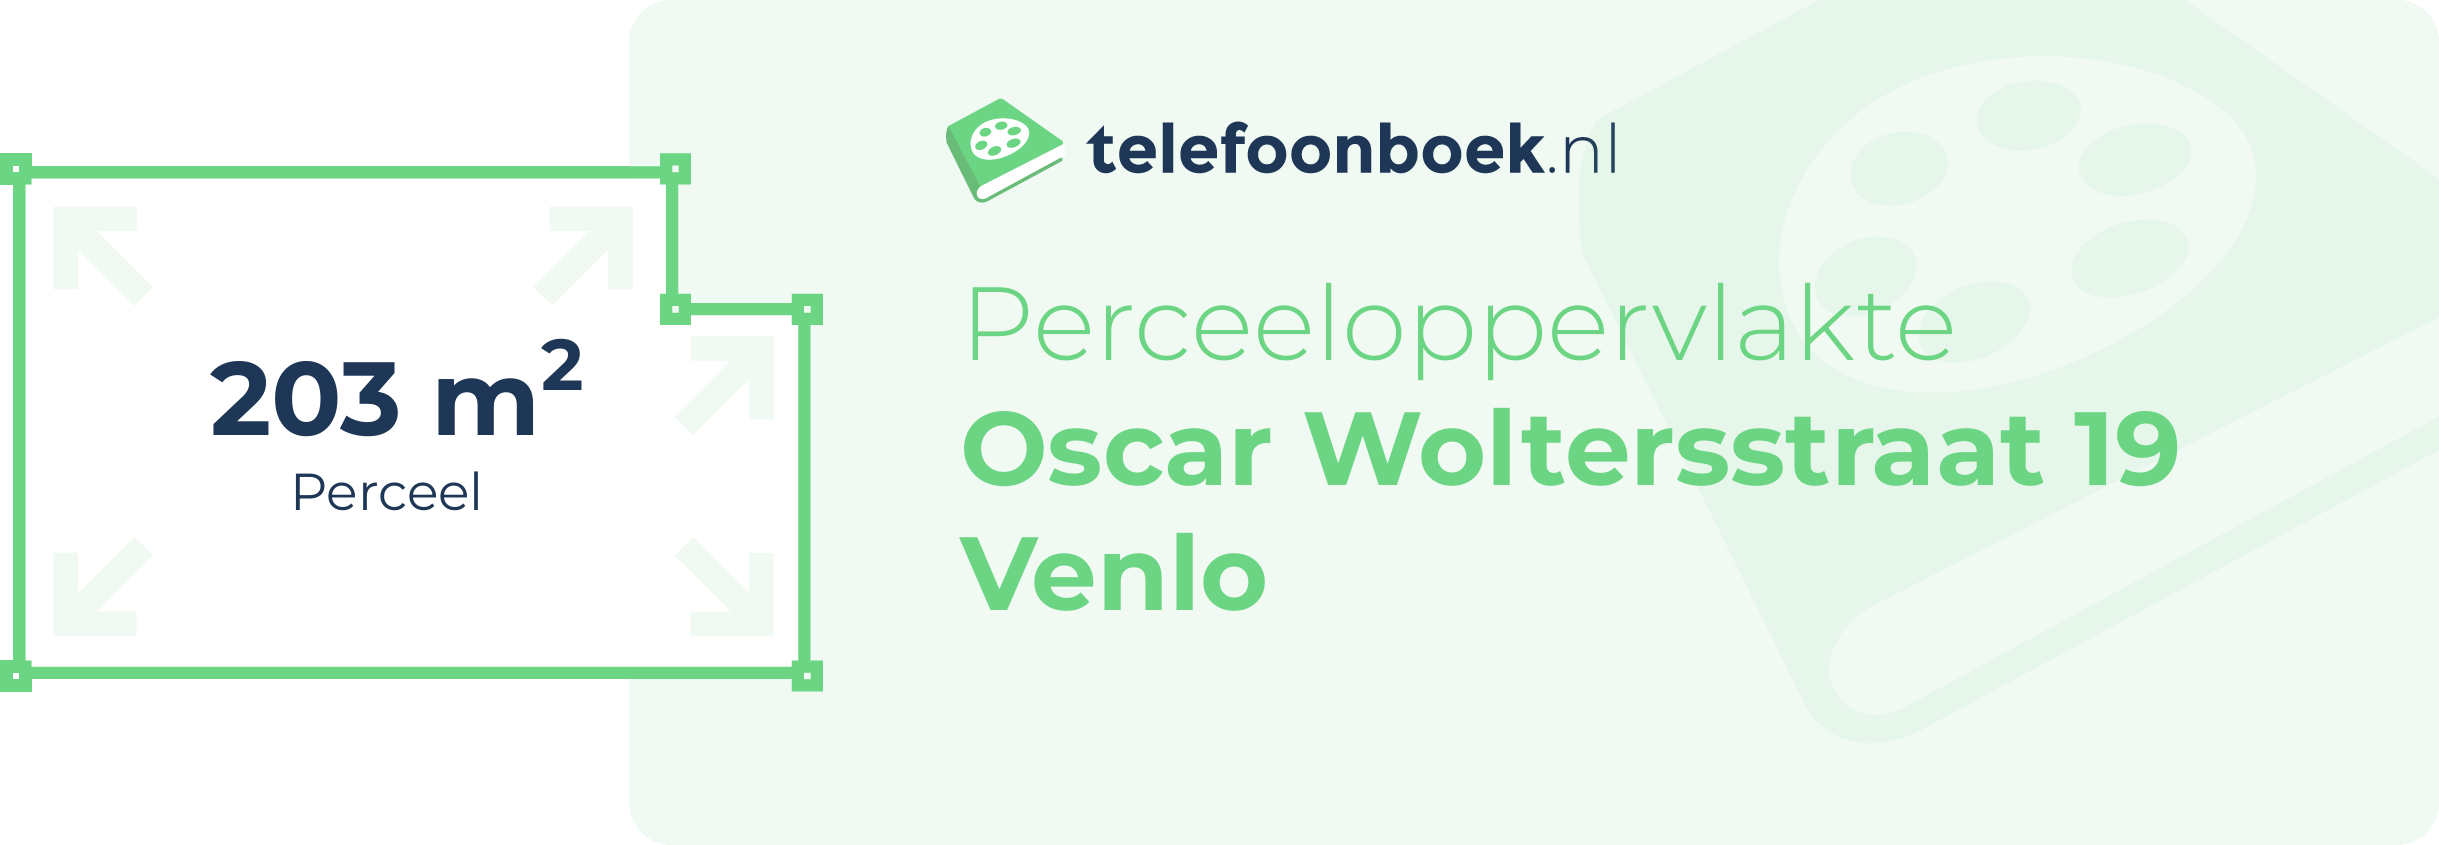 Perceeloppervlakte Oscar Woltersstraat 19 Venlo